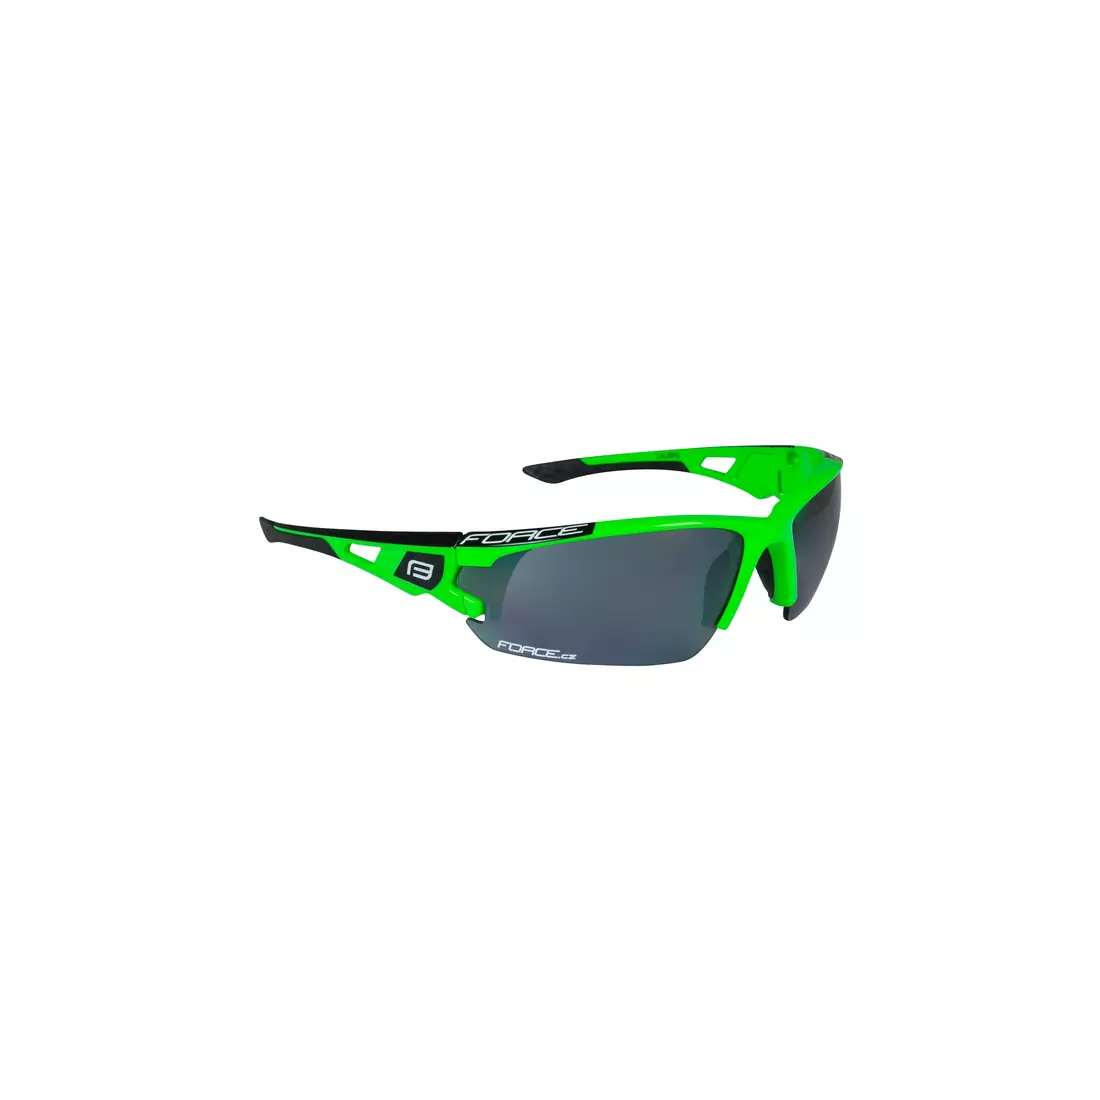 FORCE CALIBRE brýle s vyměnitelnými čočkami zelené 91050